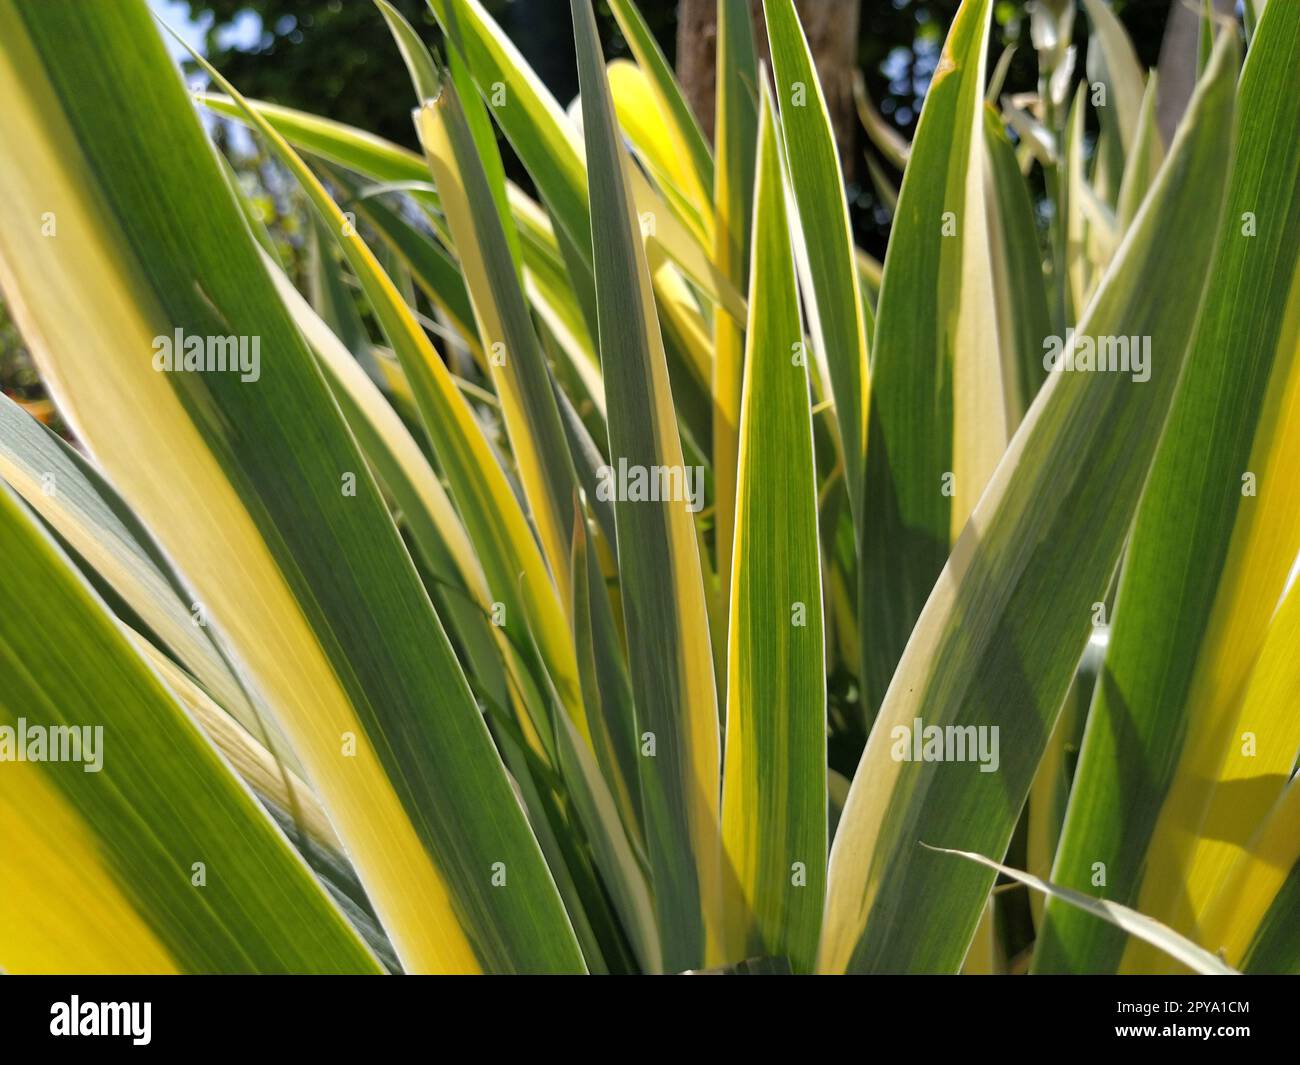 Cierre de hojas rayadas de color amarillo-verde. Iris en el jardín. Género de plantas de rizoma perennes de la familia Iris. Hojas de rayas largas verdes amarillas. Fondo floral. Jardinería. Foto de stock